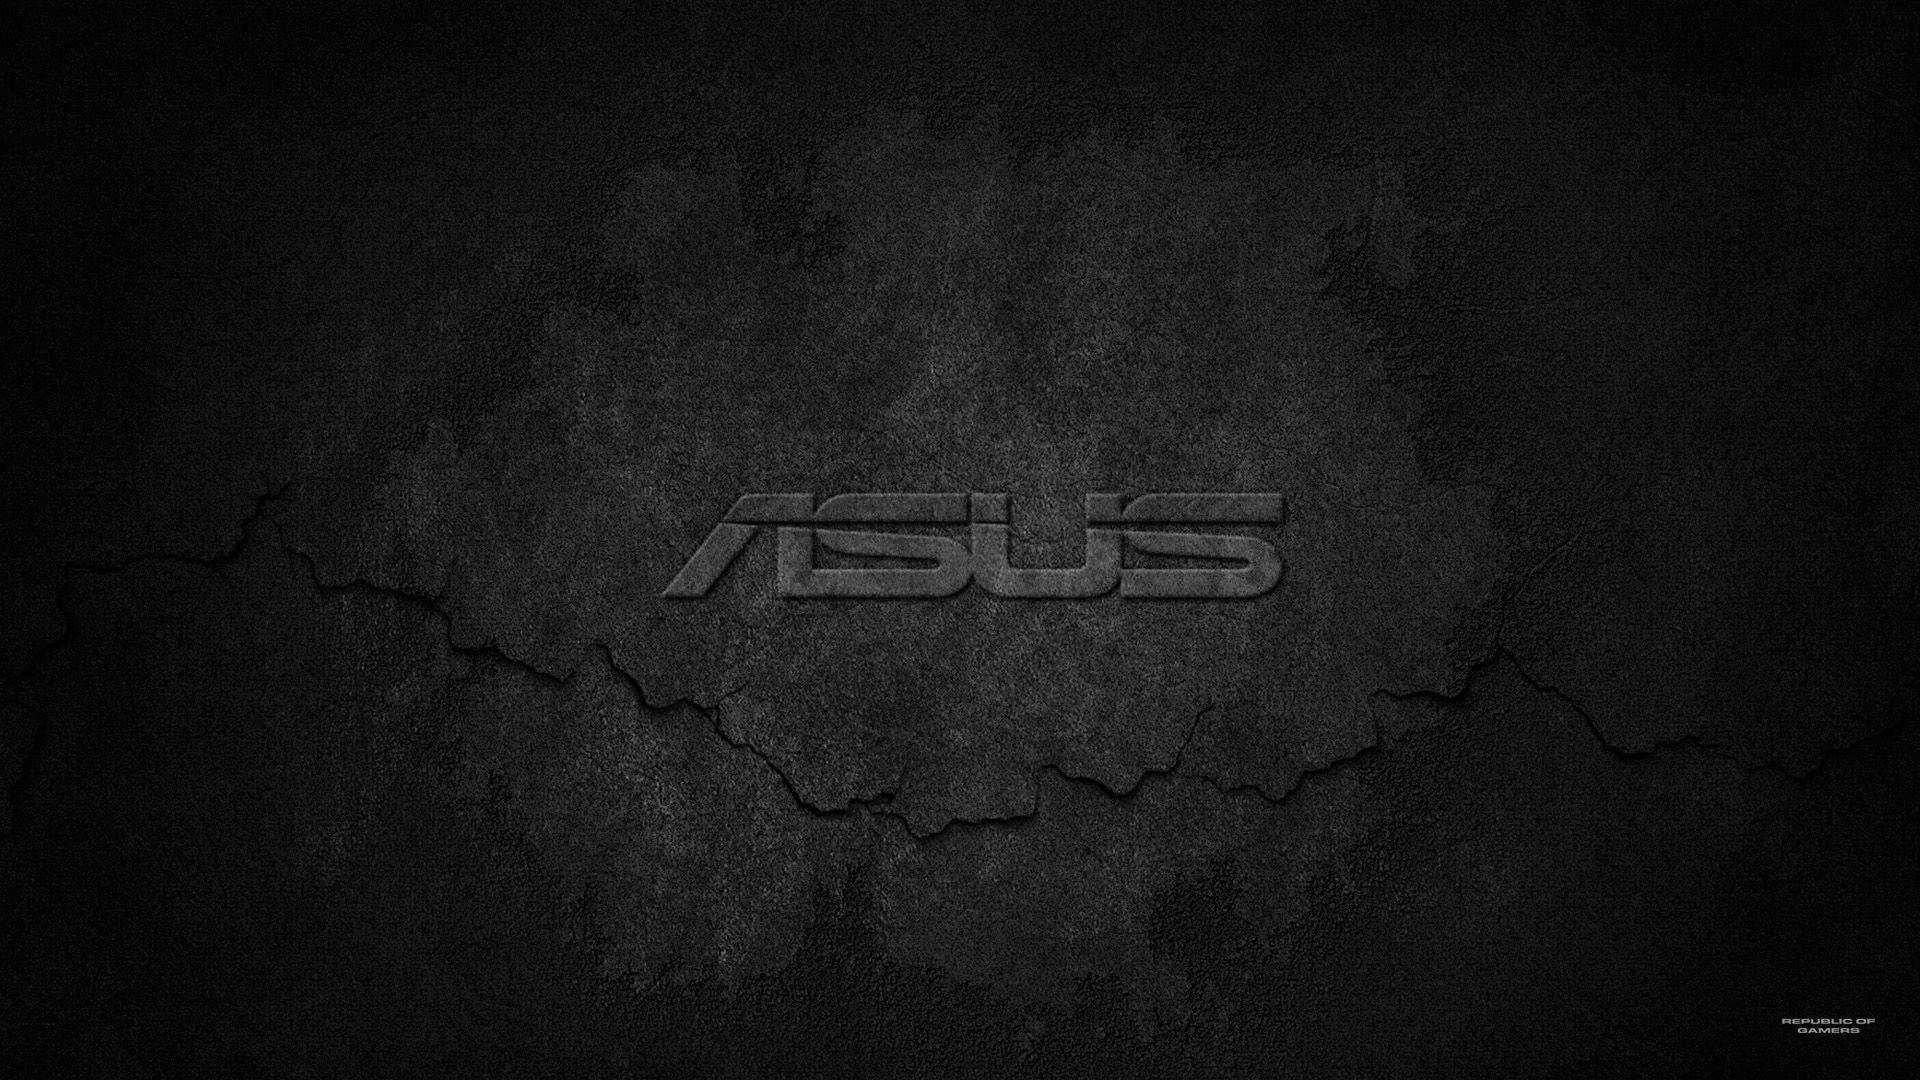 Premium Asus Rough Logo Background